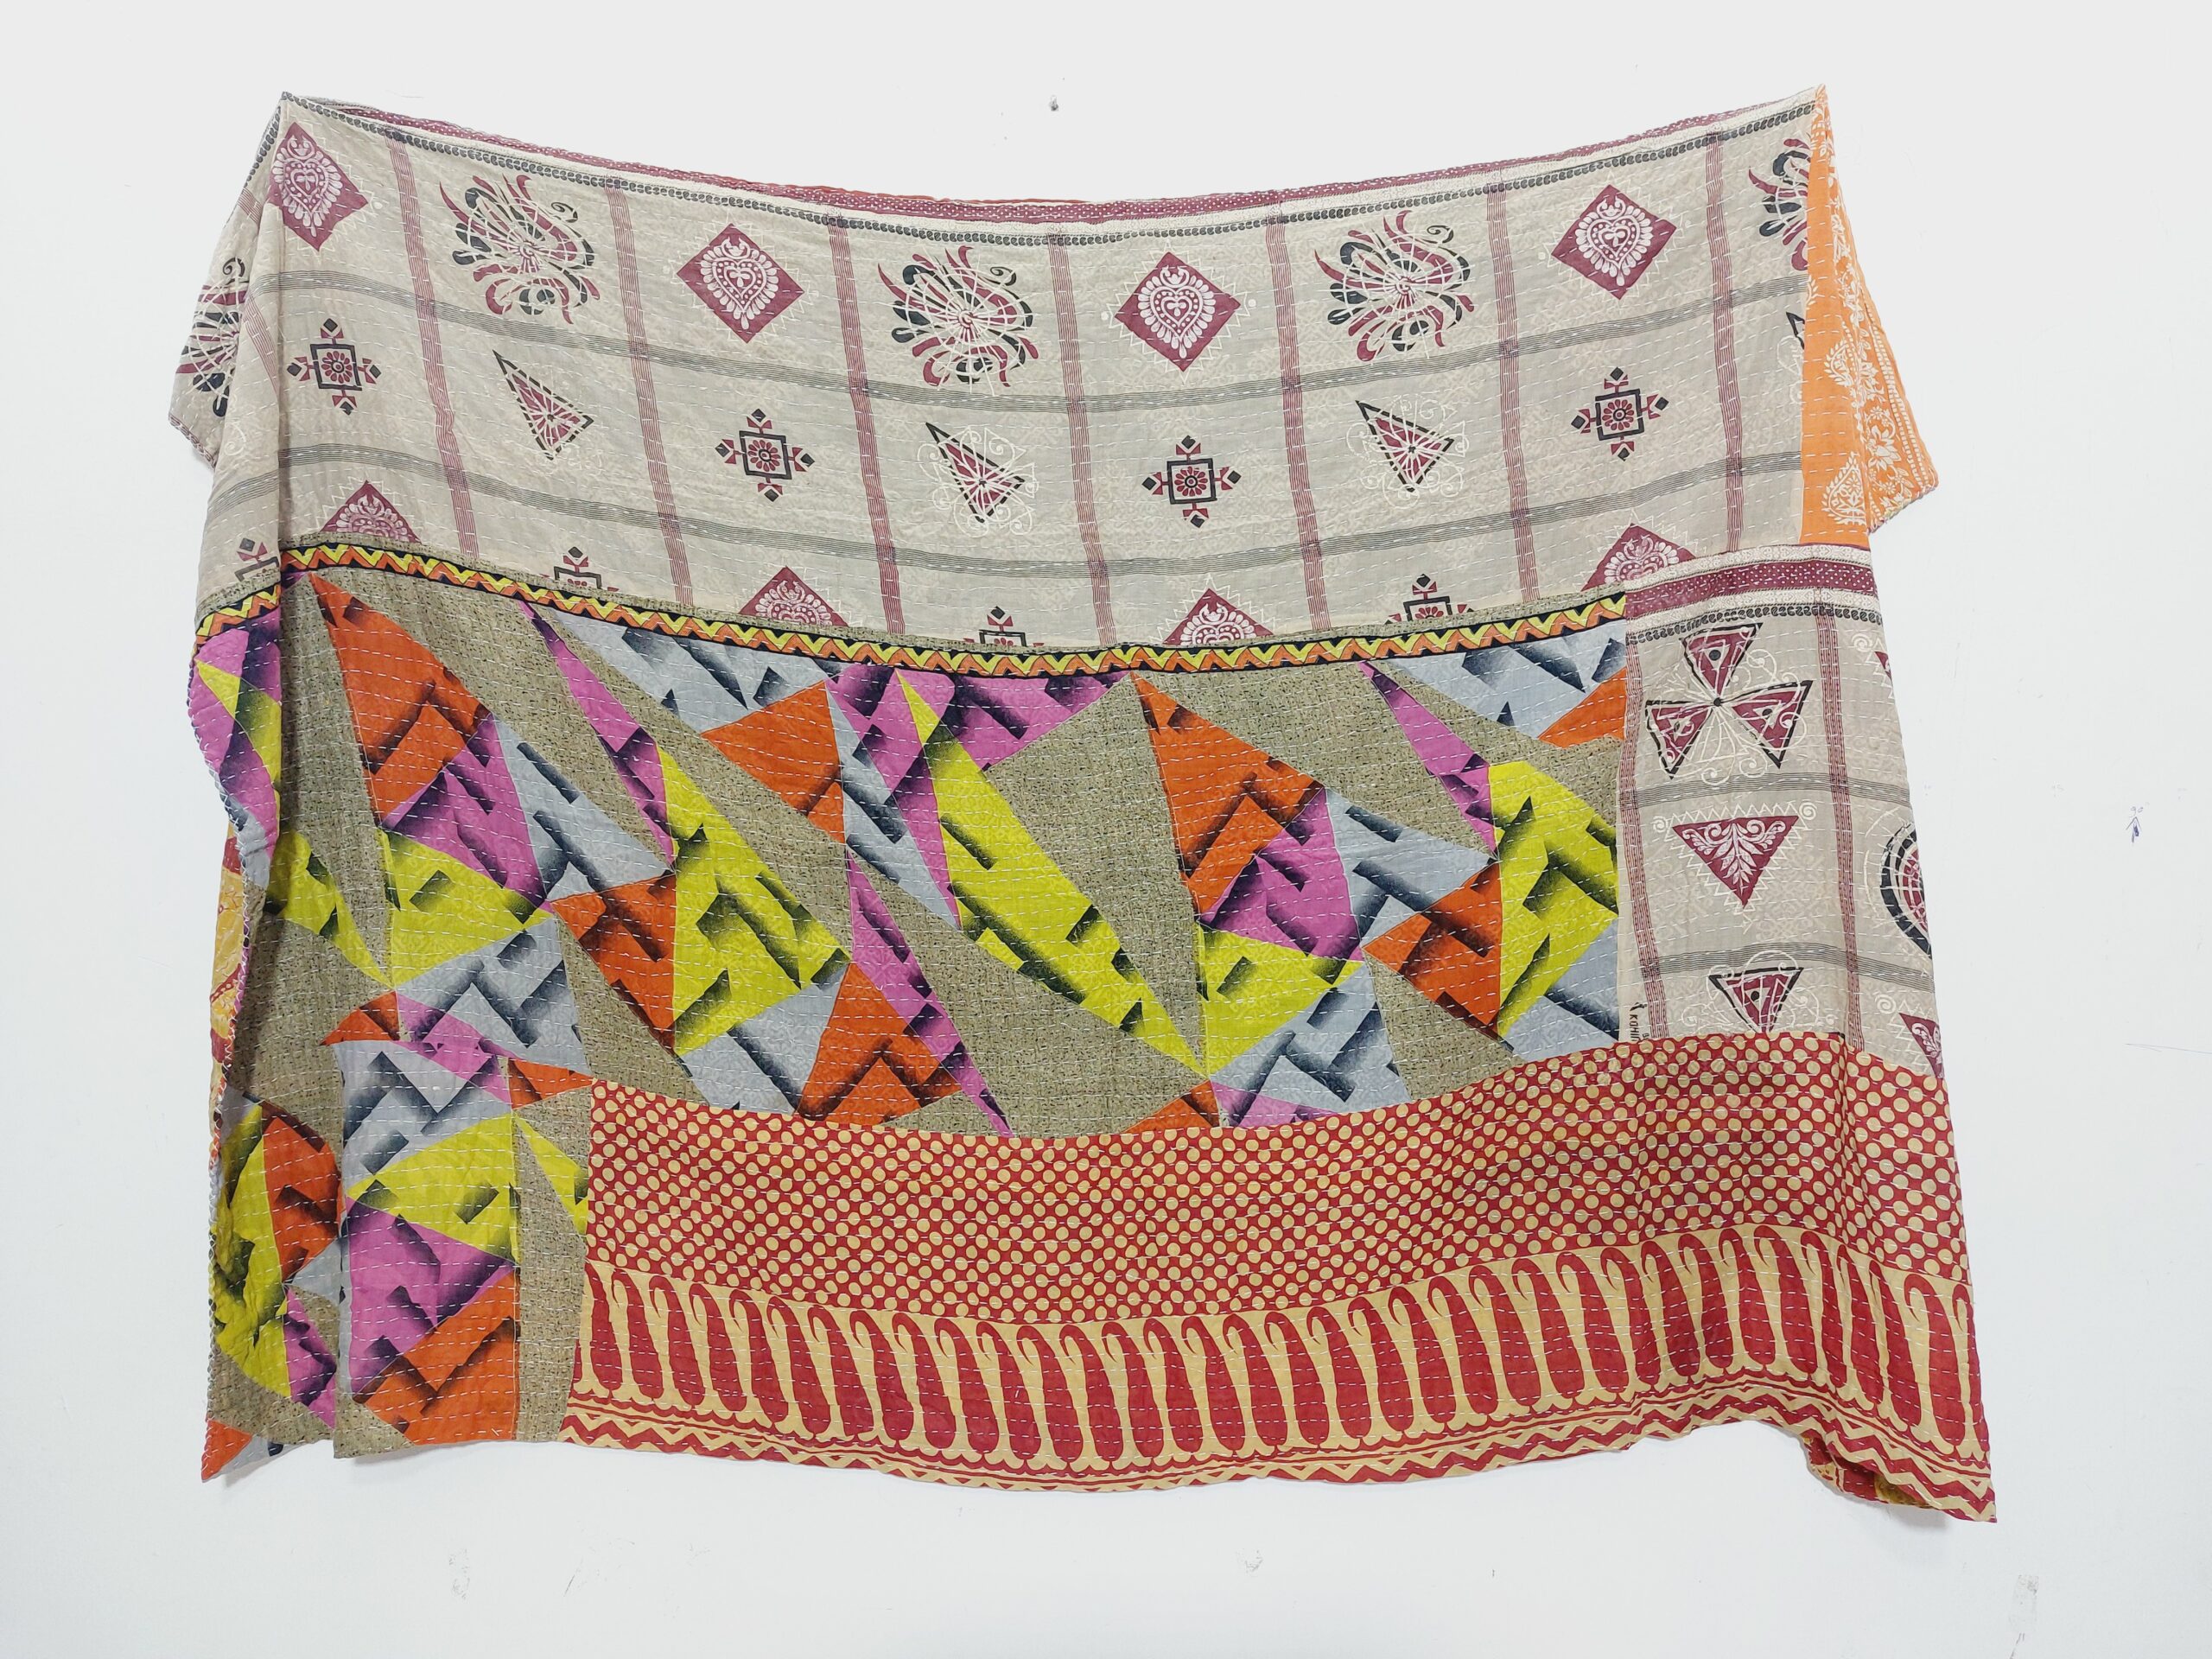 Bohemian Artisan Made Kantha Quilt - Vintage Kantha Quilts, Throw ...